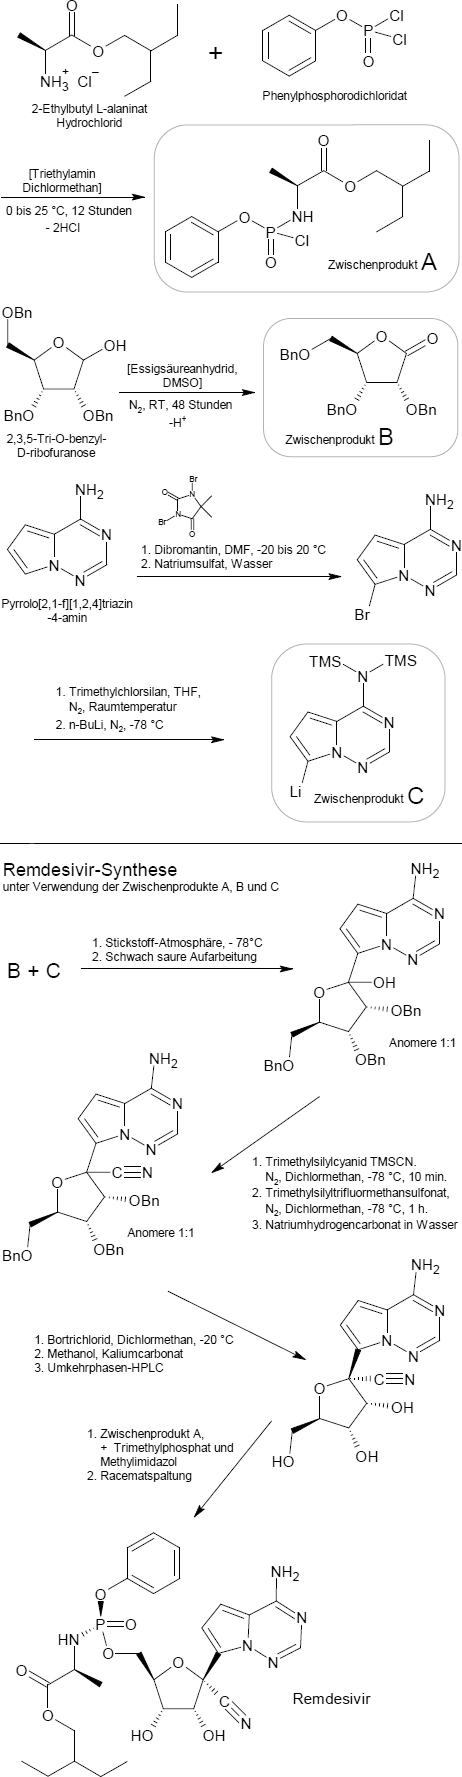 Remdesivir-Synthese